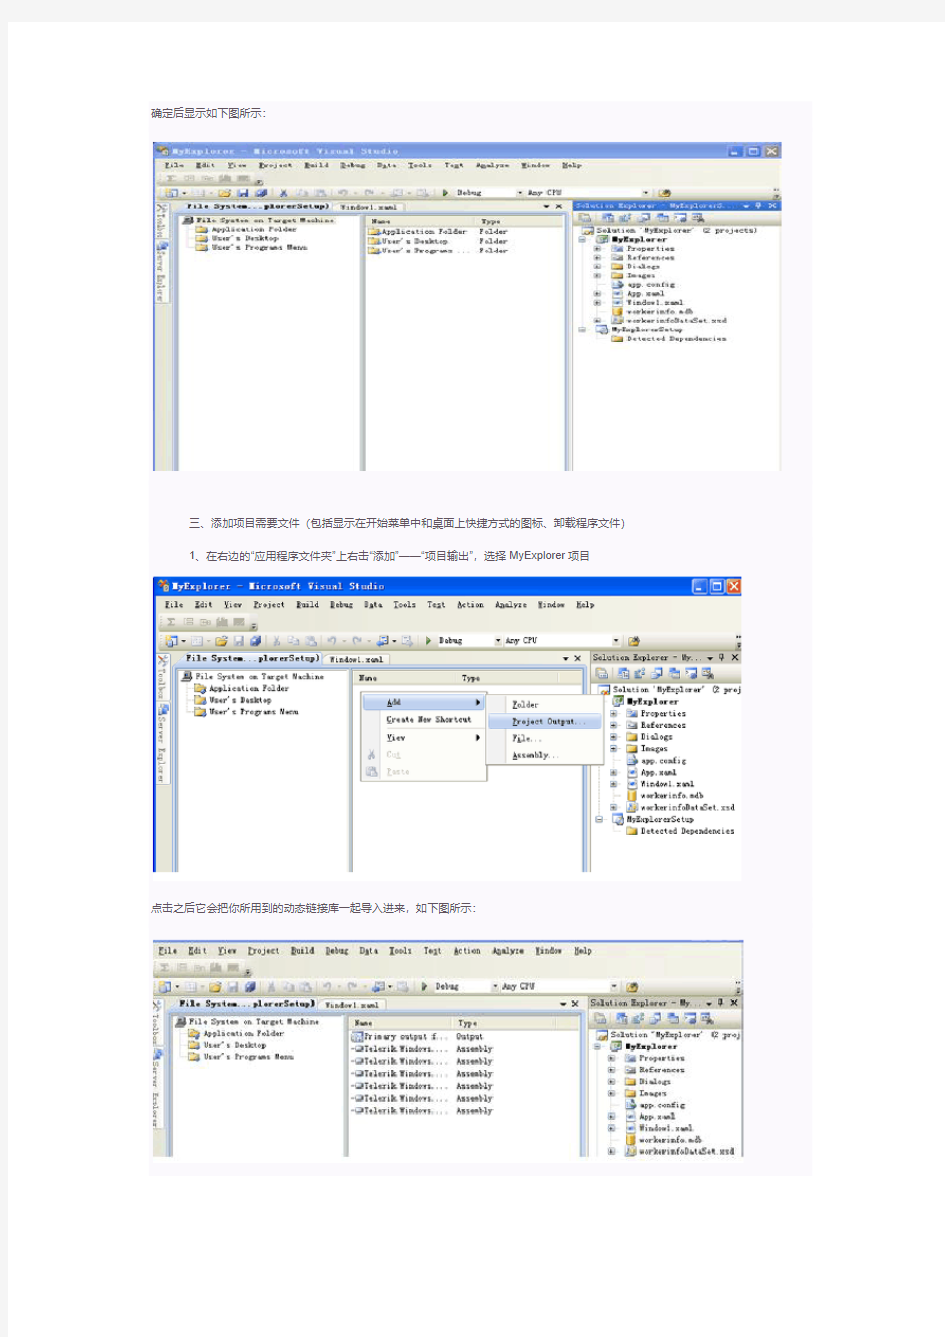 Visual Studio程序打包生成安装包 (全过程图示)